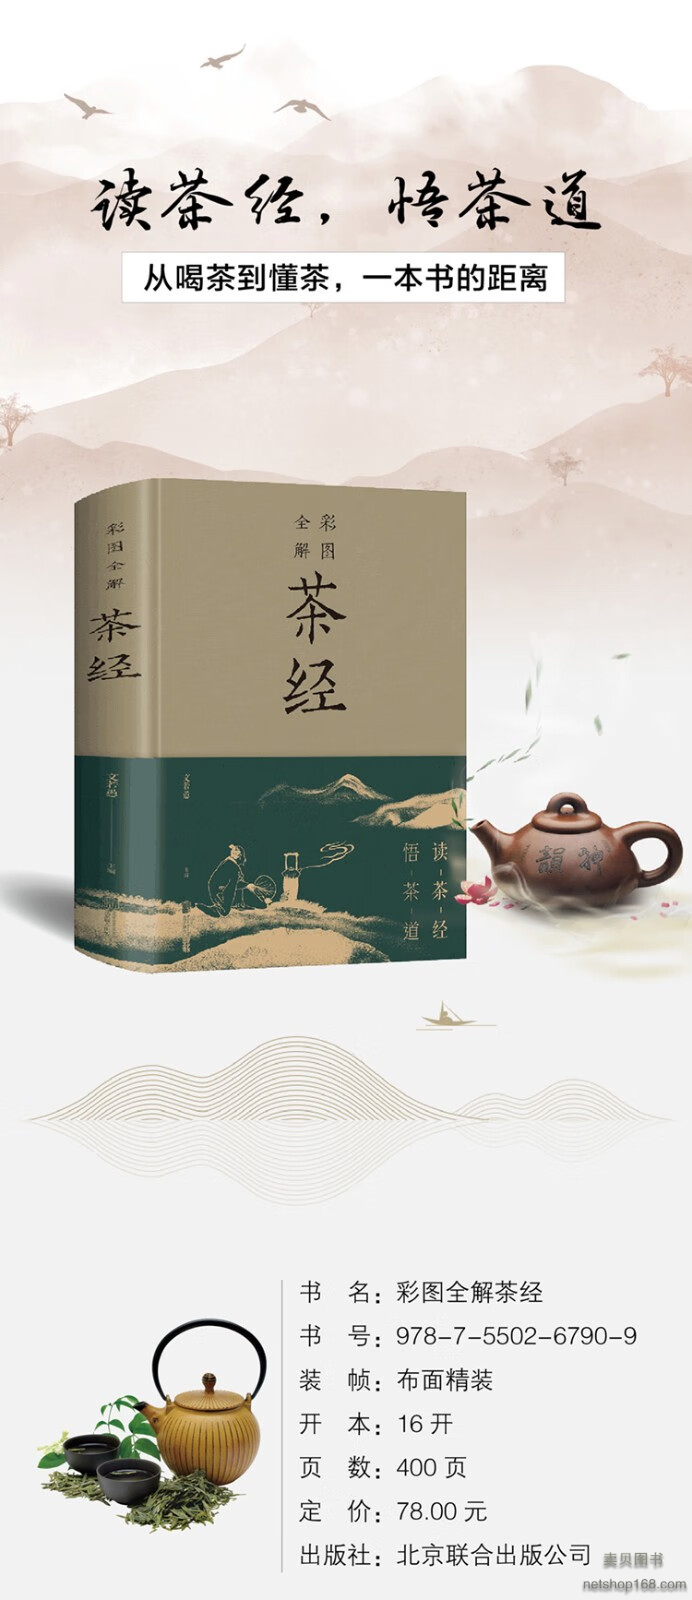 《彩图全解茶经 书为茶文化通俗读物，是一部关于茶叶生产的历史、源流、现状、生产技术以及饮茶技艺、茶道原理的综合性论著》